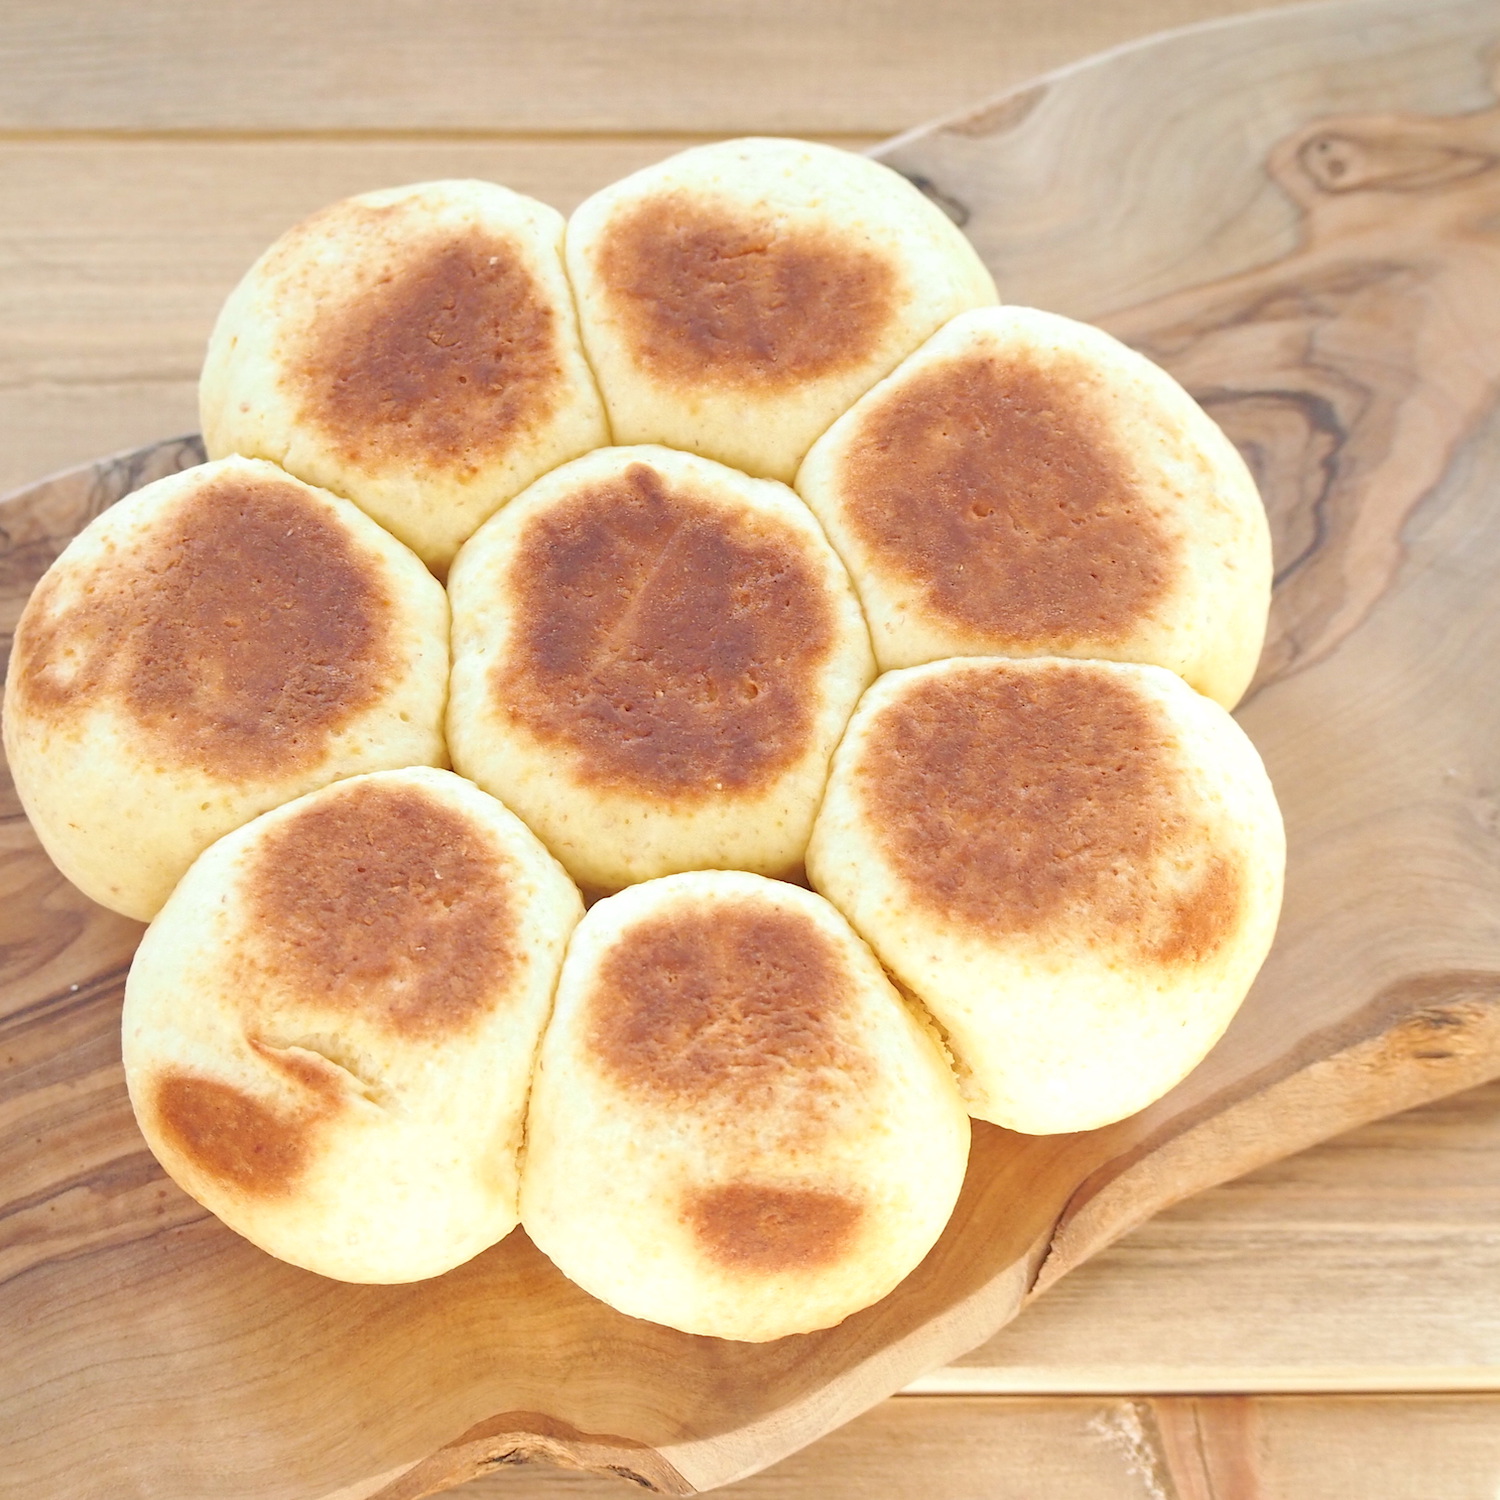 キャンプでパンを作ろう ホットケーキミックスで作る簡単ちぎりパンレシピ 料理 レシピ Be Pal キャンプ アウトドア 自然派生活の情報源ビーパル